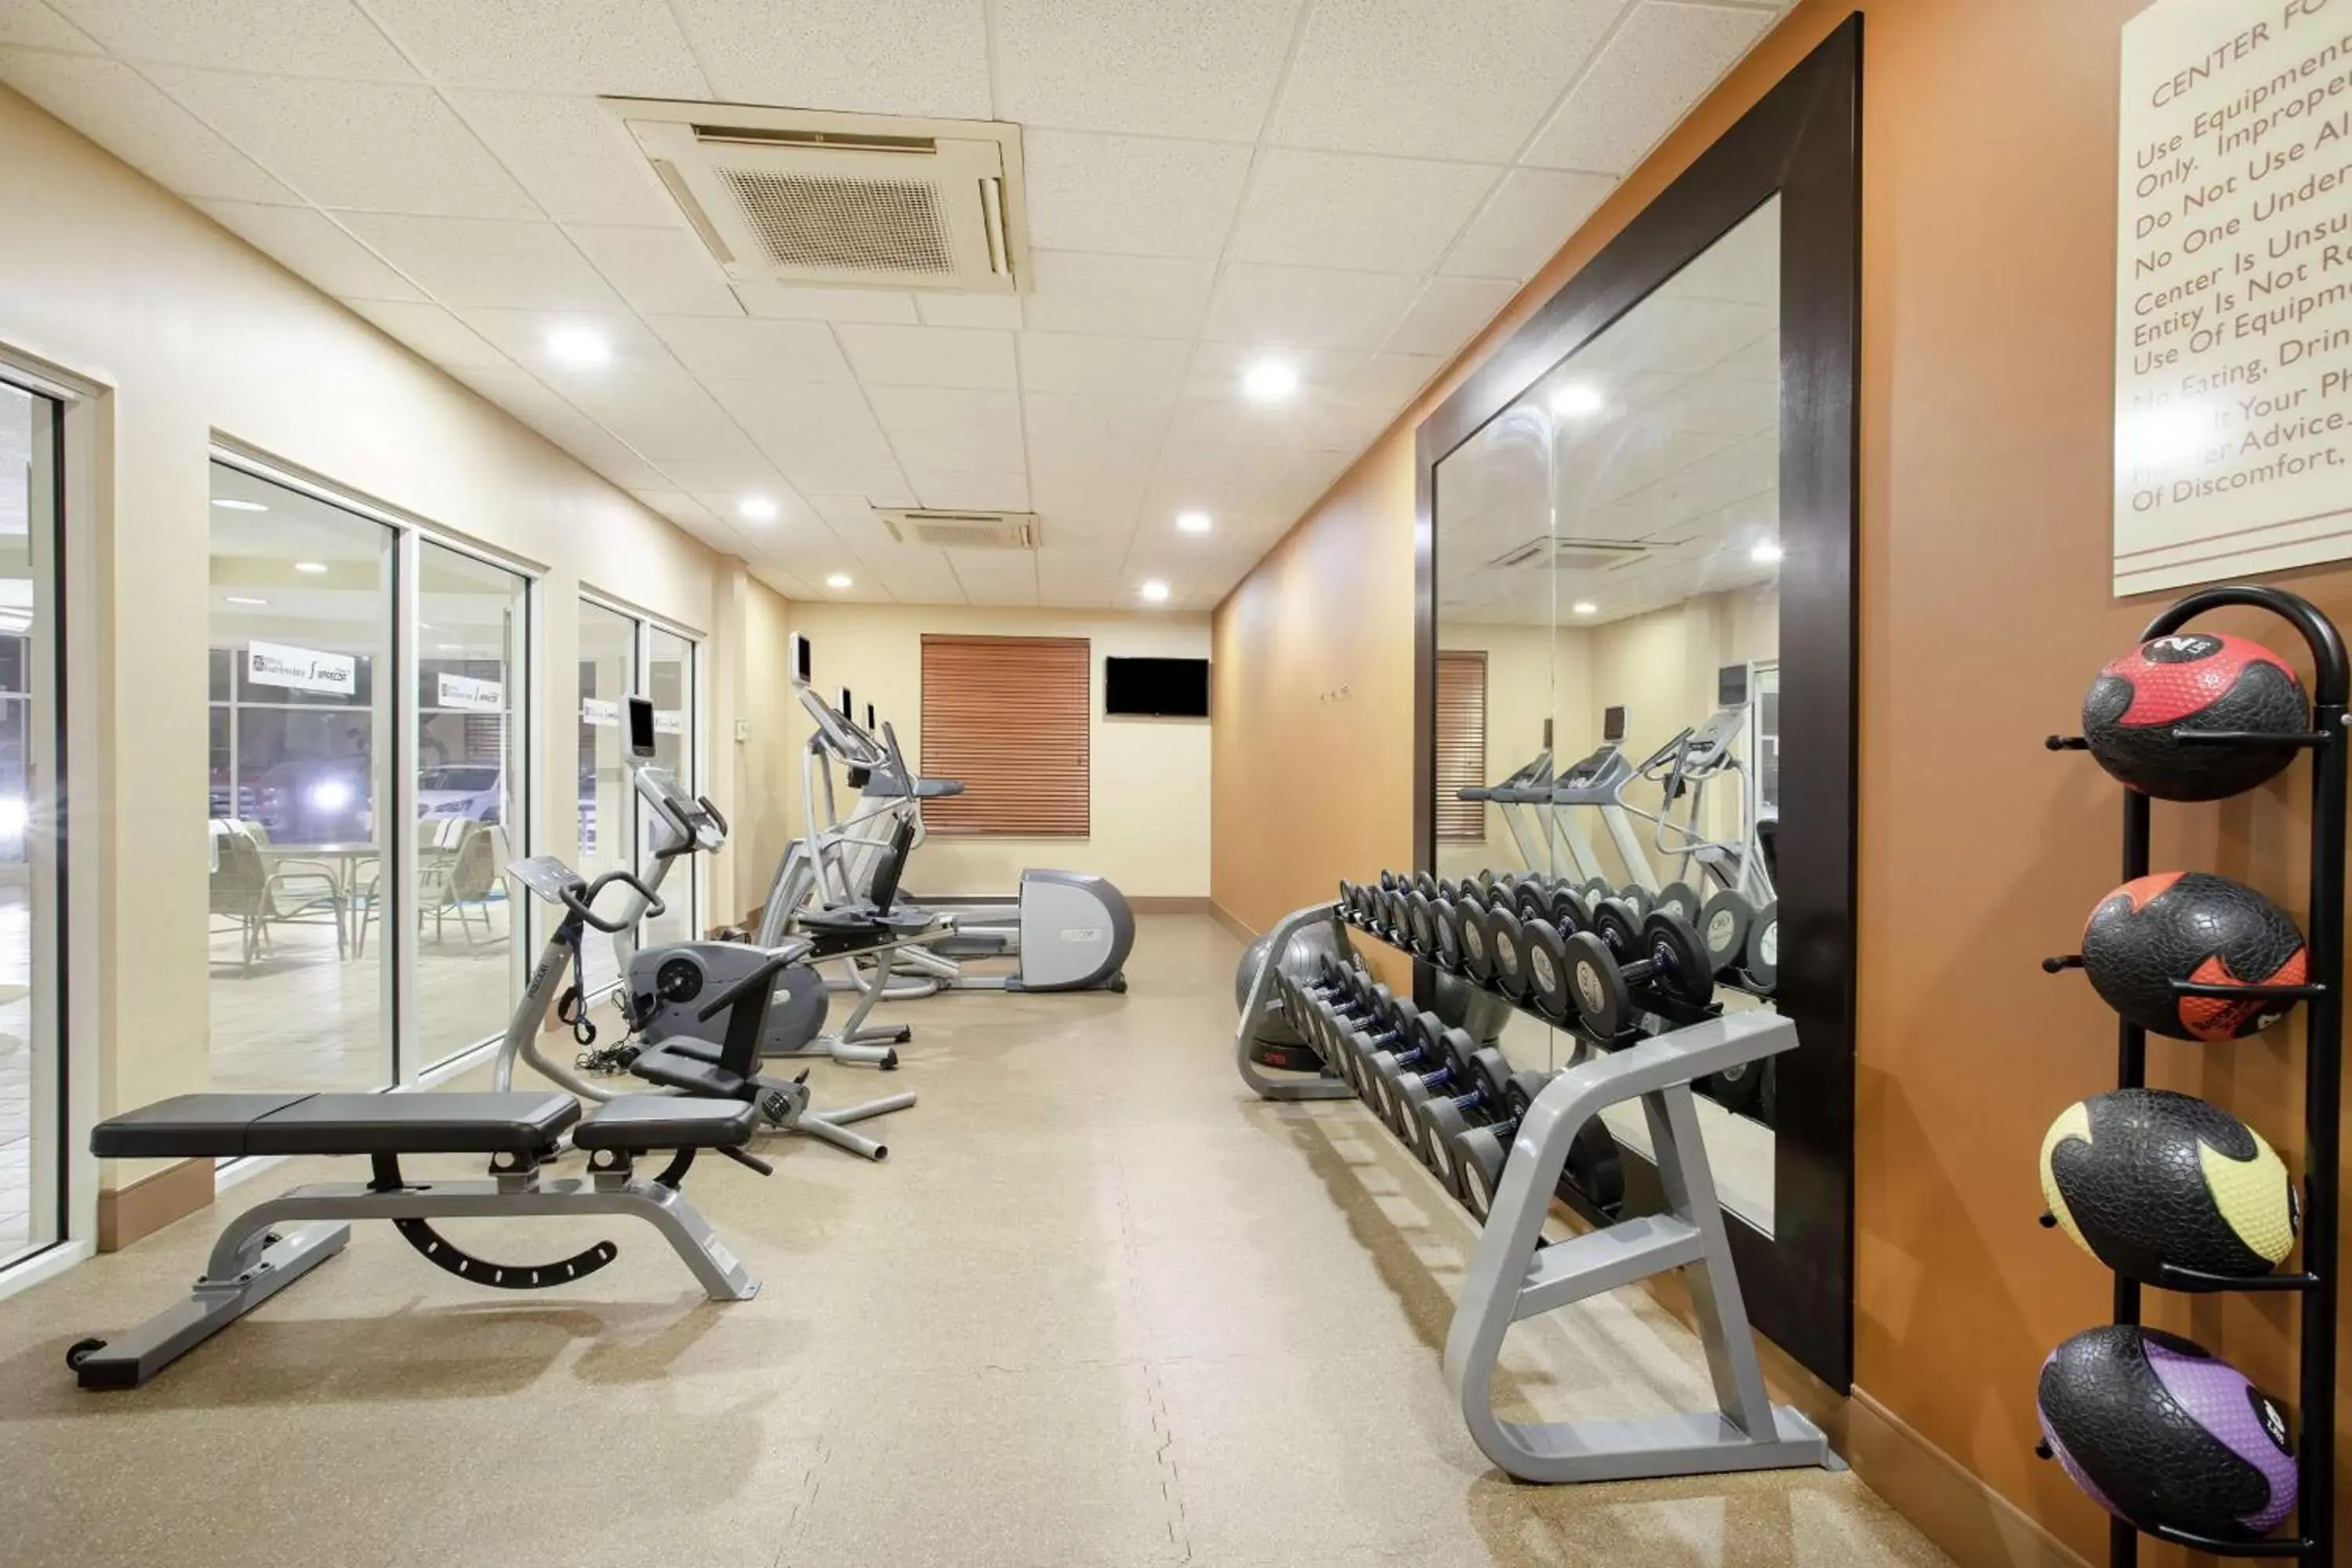 Fitness centre/facilities, Fitness Center/Facilities in Hilton Garden Inn Casper